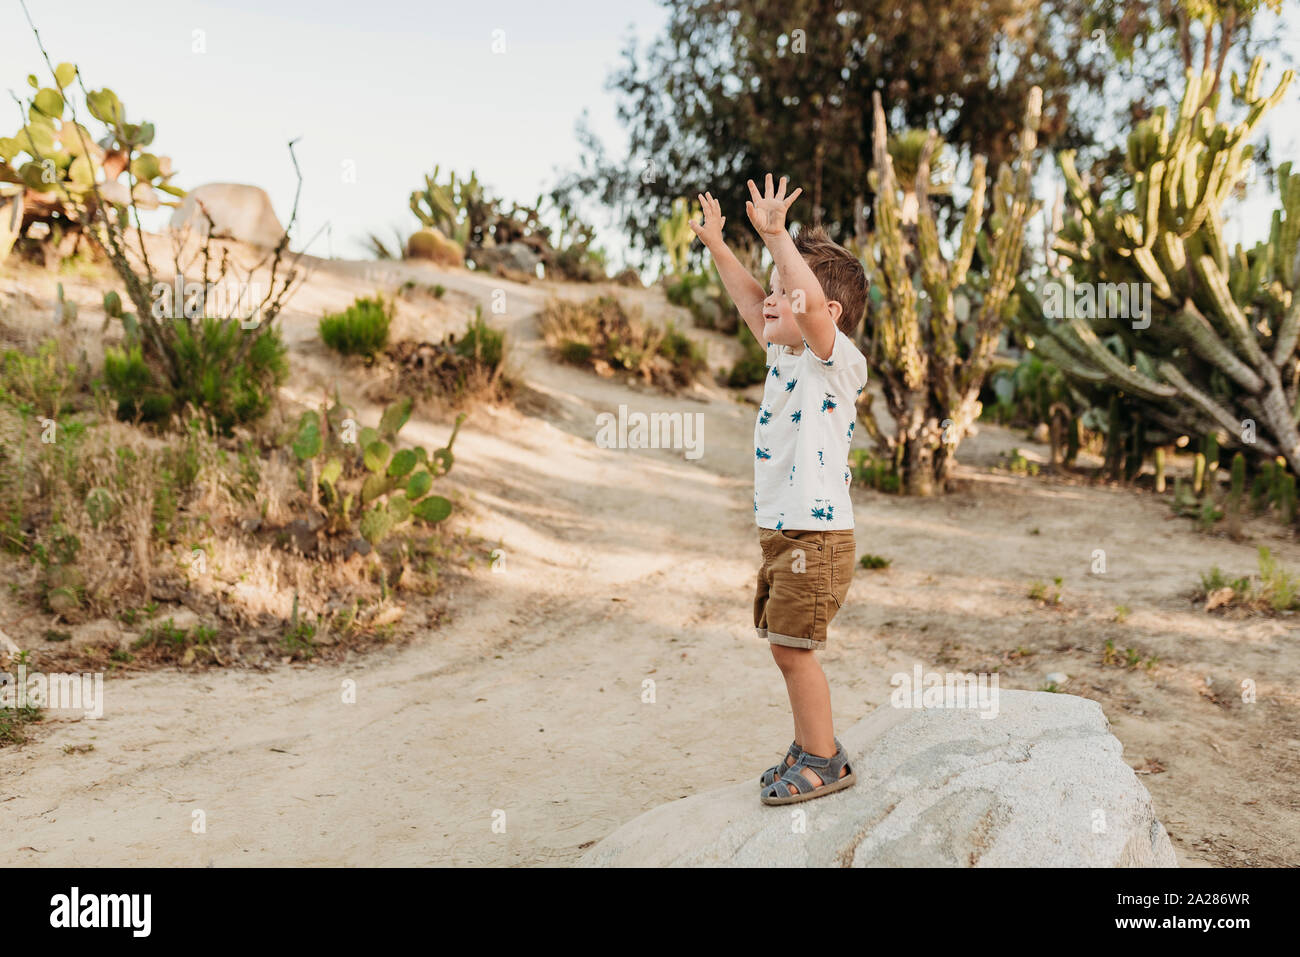 Niño de edad preescolar de pie sobre una roca en el jardín de cactus con los brazos levantados Foto de stock